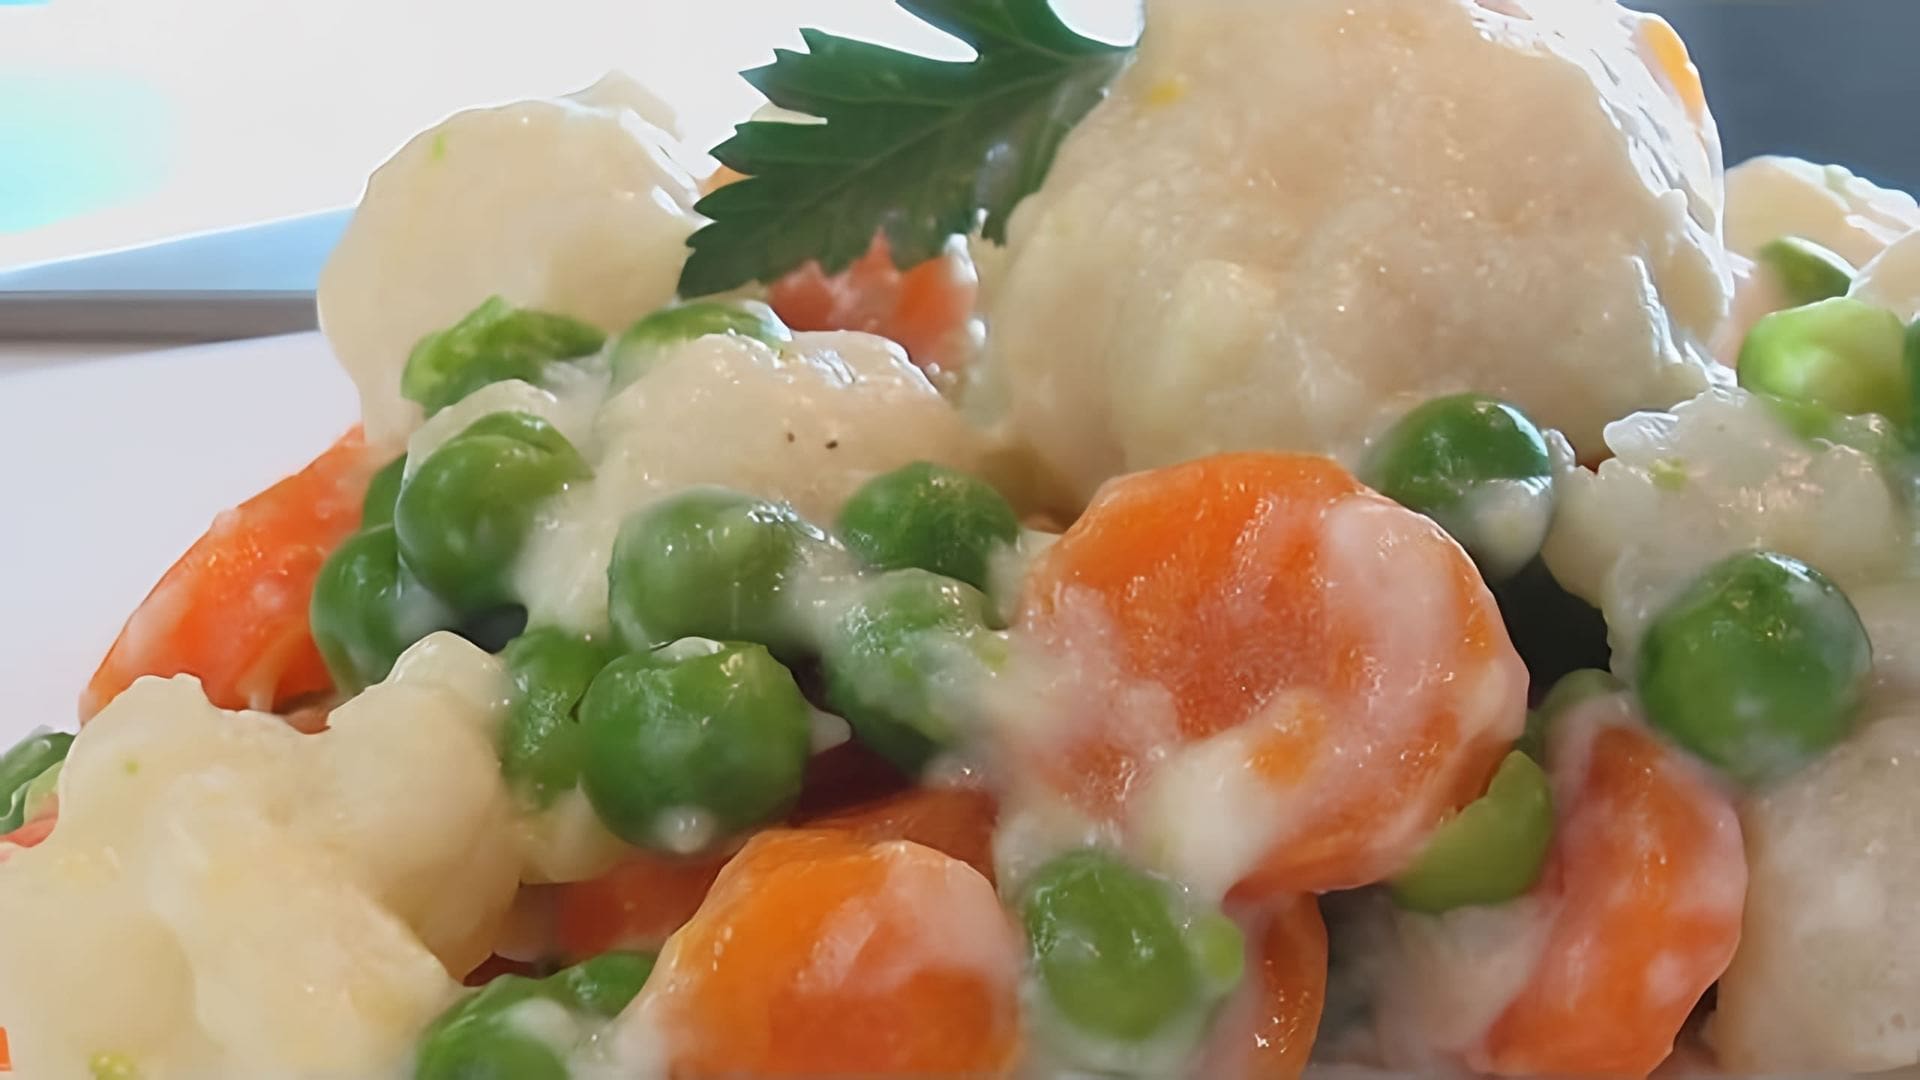 В этом видео демонстрируется рецепт приготовления овощей в молочном соусе по книге "О вкусной и здоровой пище"